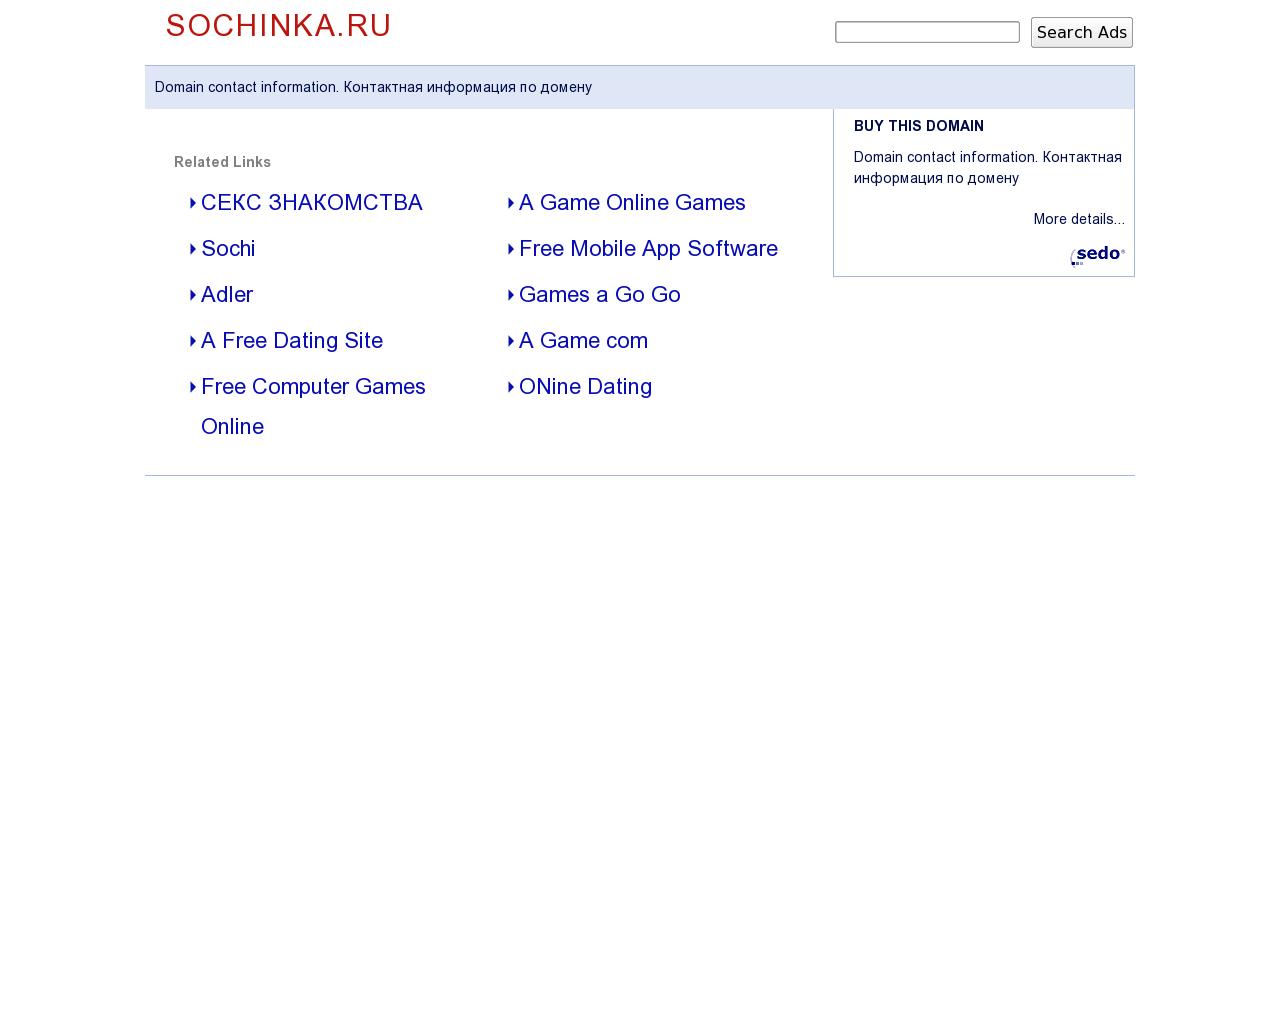 Изображение сайта sochinka.ru в разрешении 1280x1024